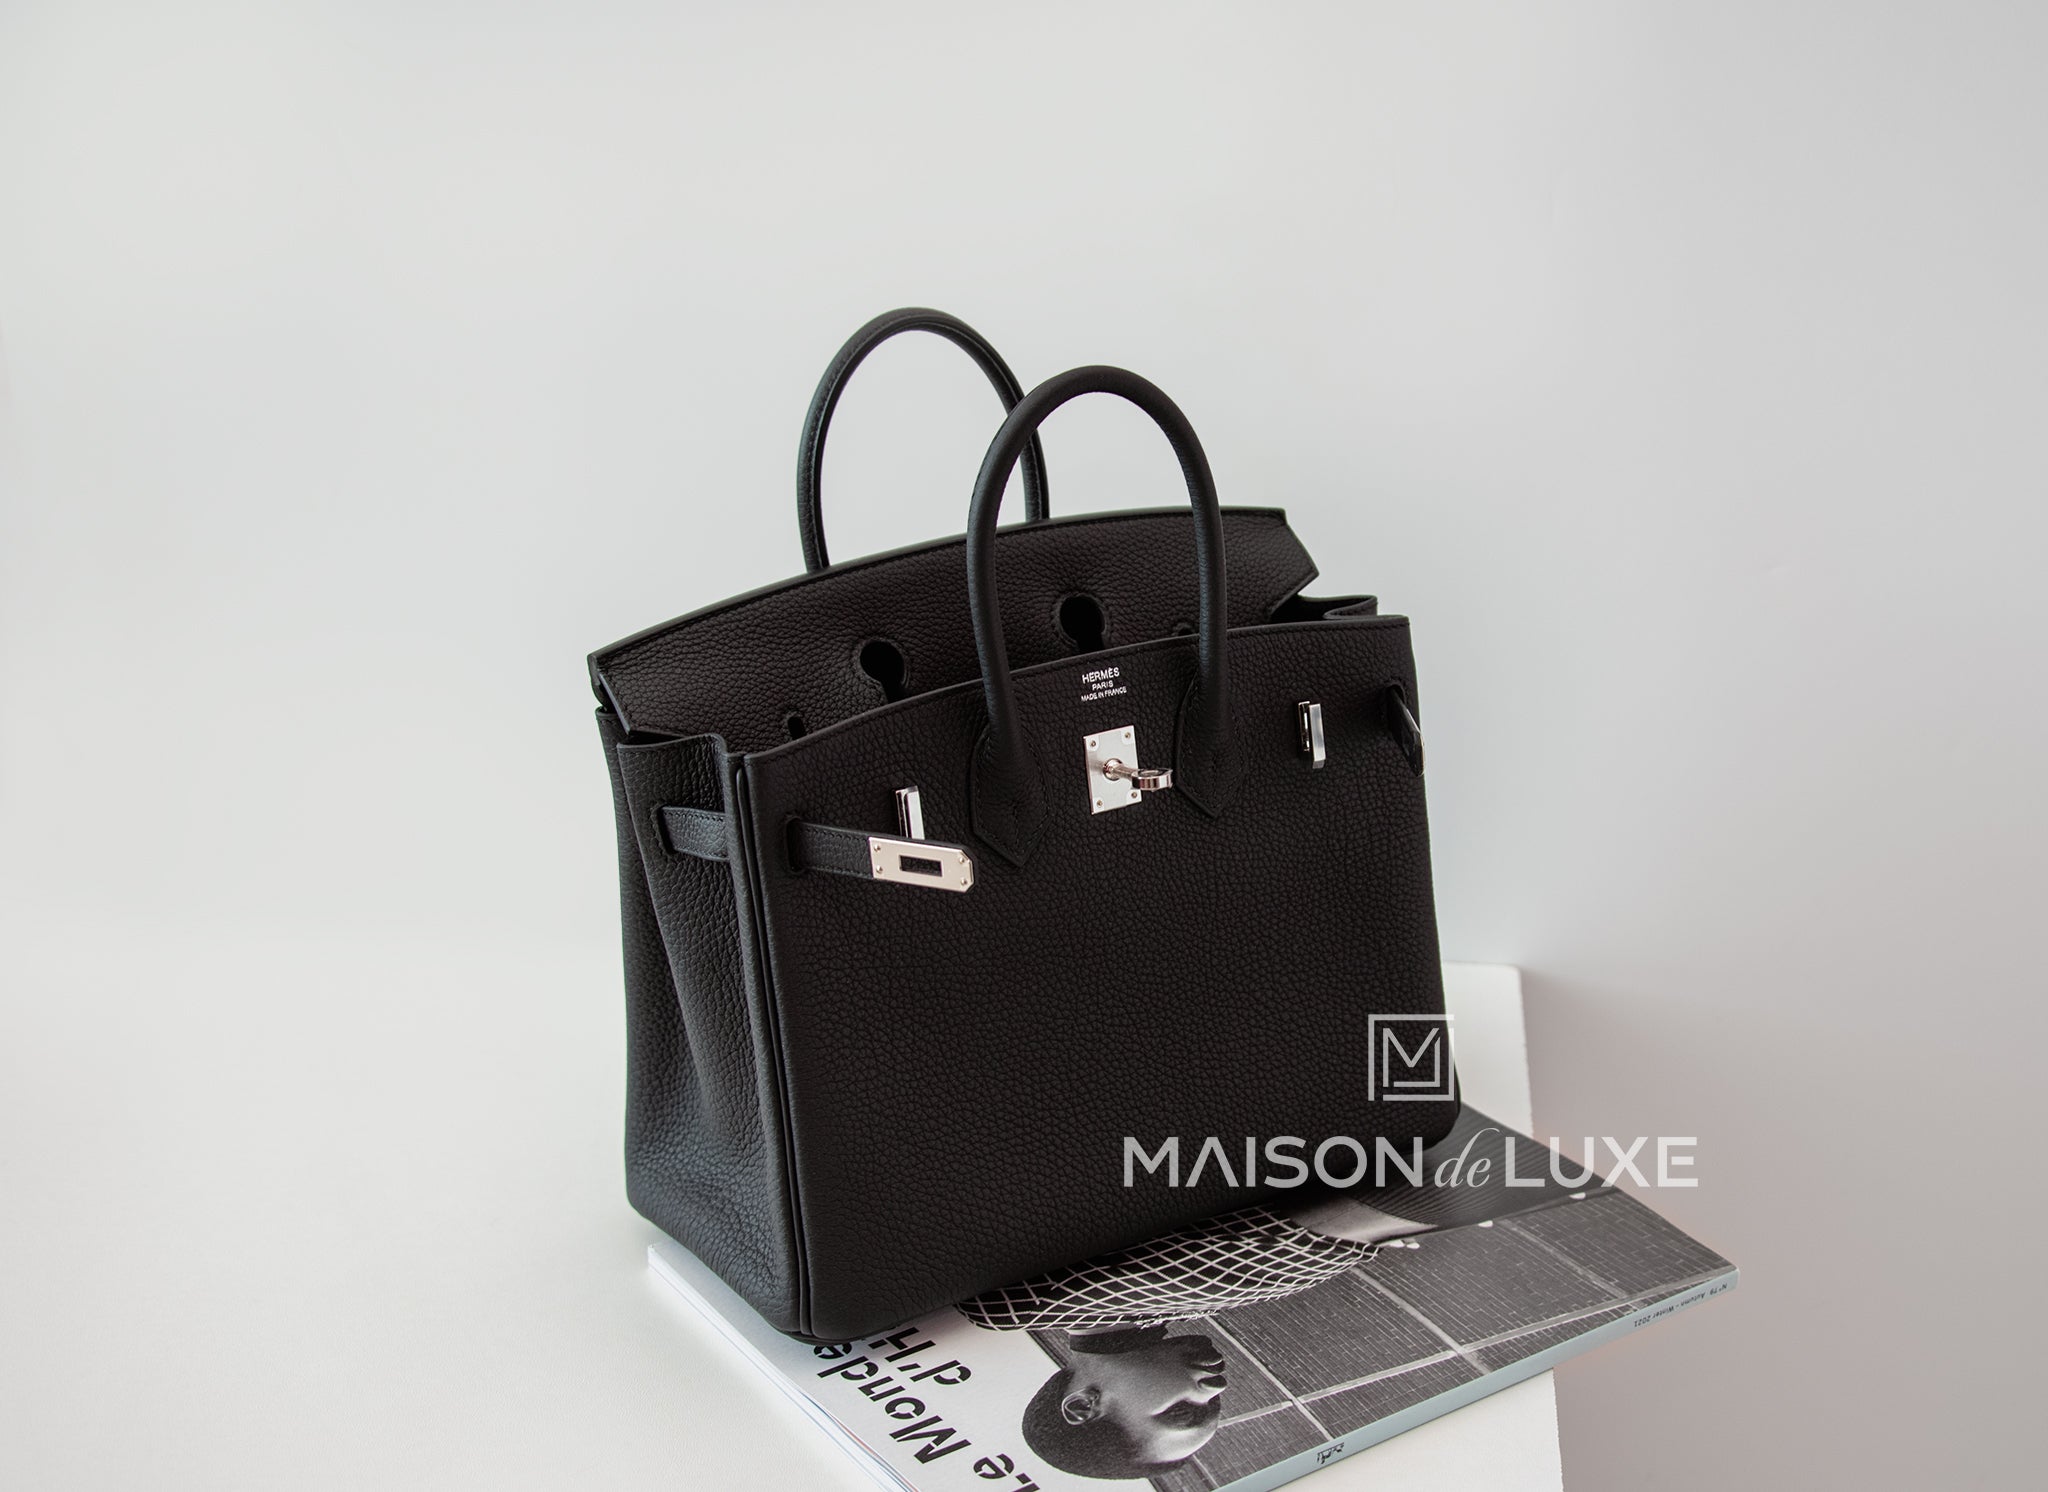 Hermès Birkin 25 Noir (Black) Togo Palladium Hardware PHW